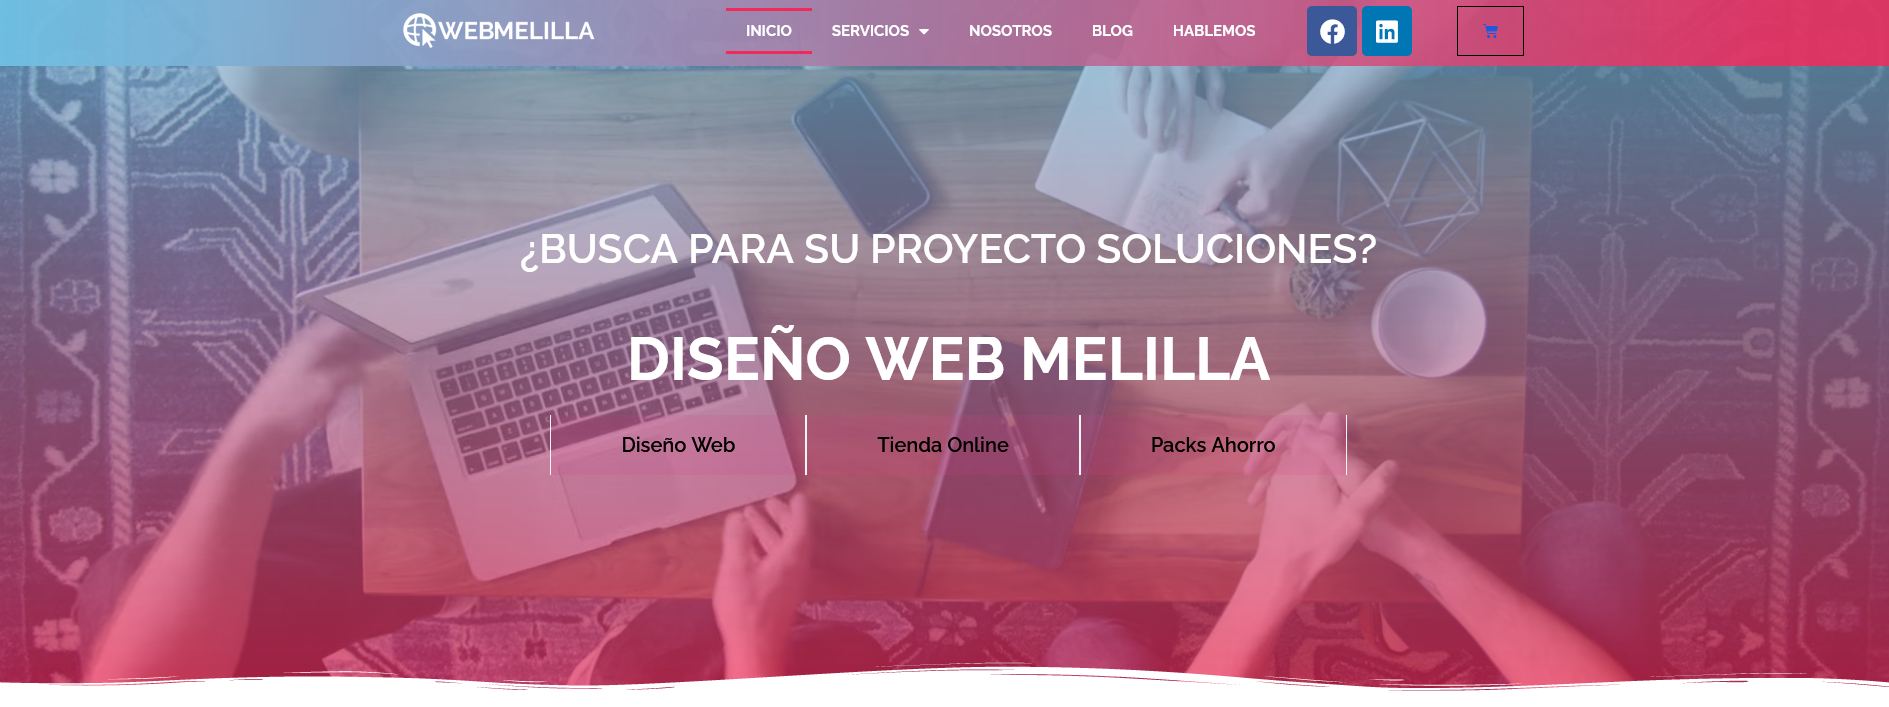 Web Melilla - Diseño Web y Marketing Digital SEO